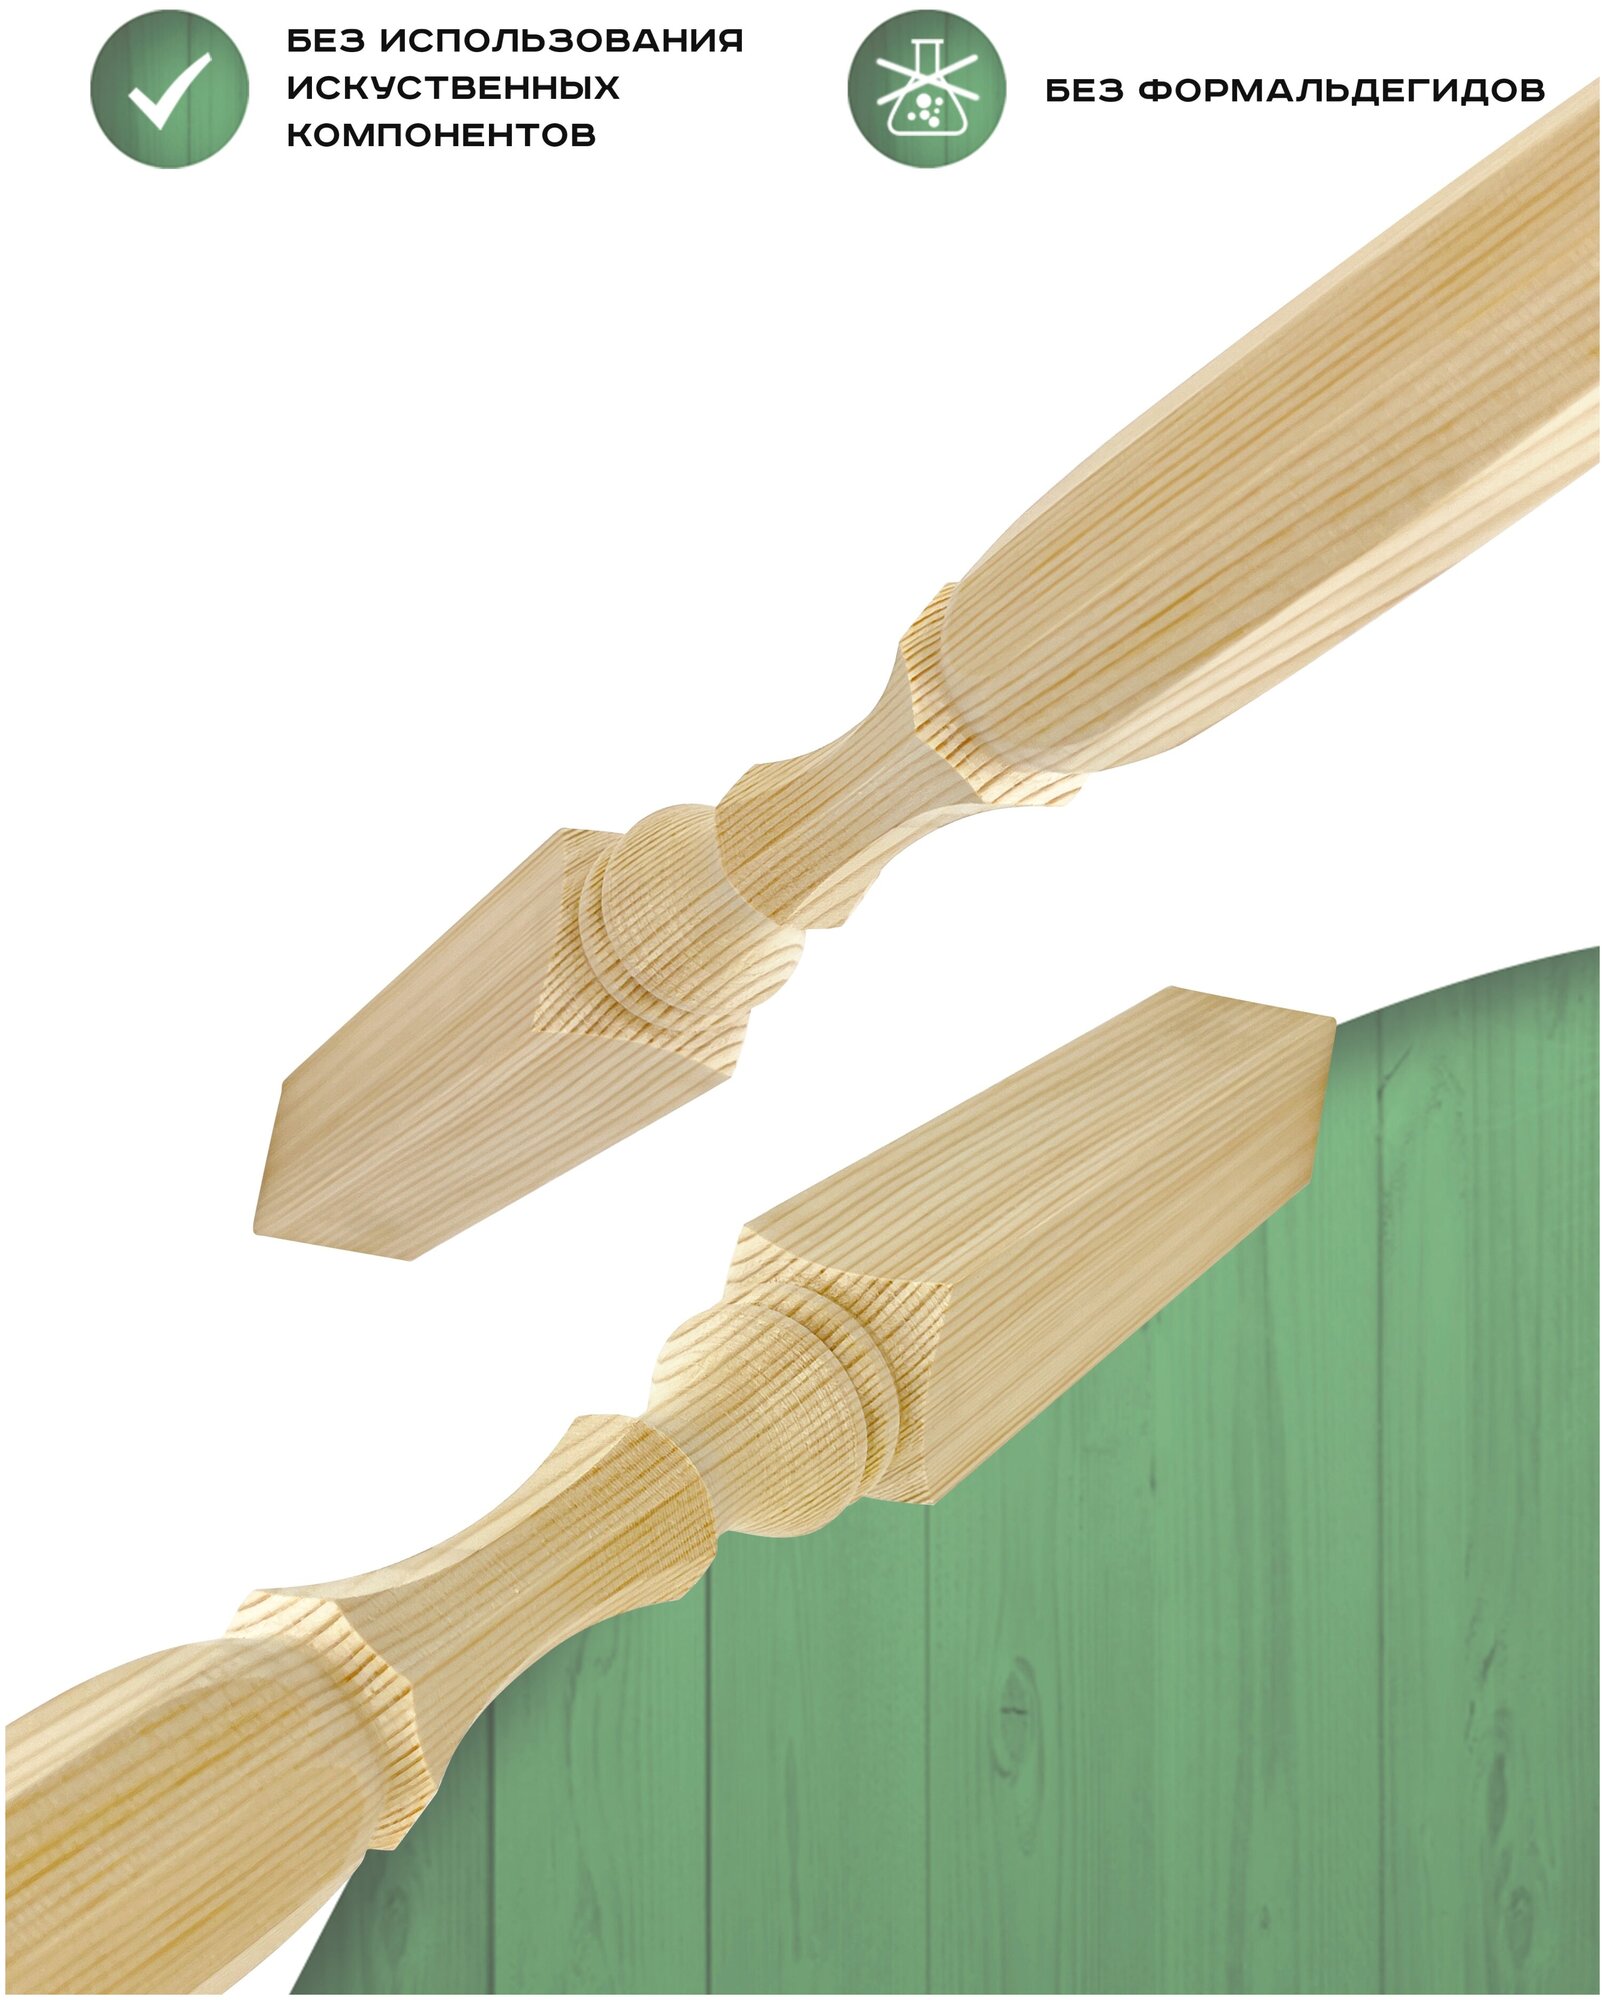 Набор 4 балясины деревянные 900х50х50мм / сращенная / ограждение для лестницы балюстрада из сосны премиум АА модель 50AN13